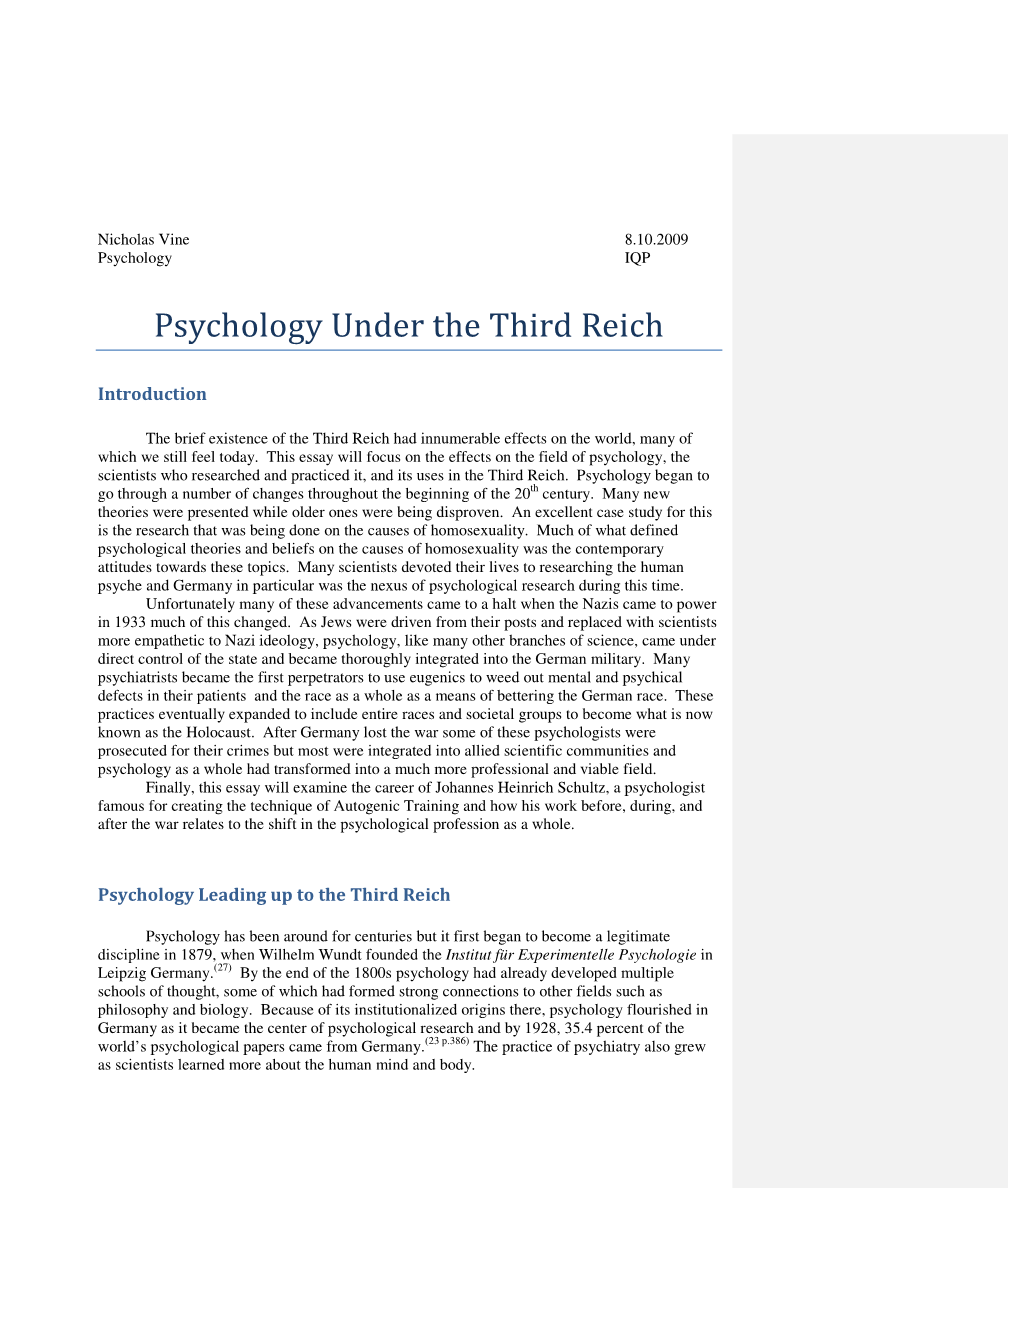 Psychology Under the Third Reich